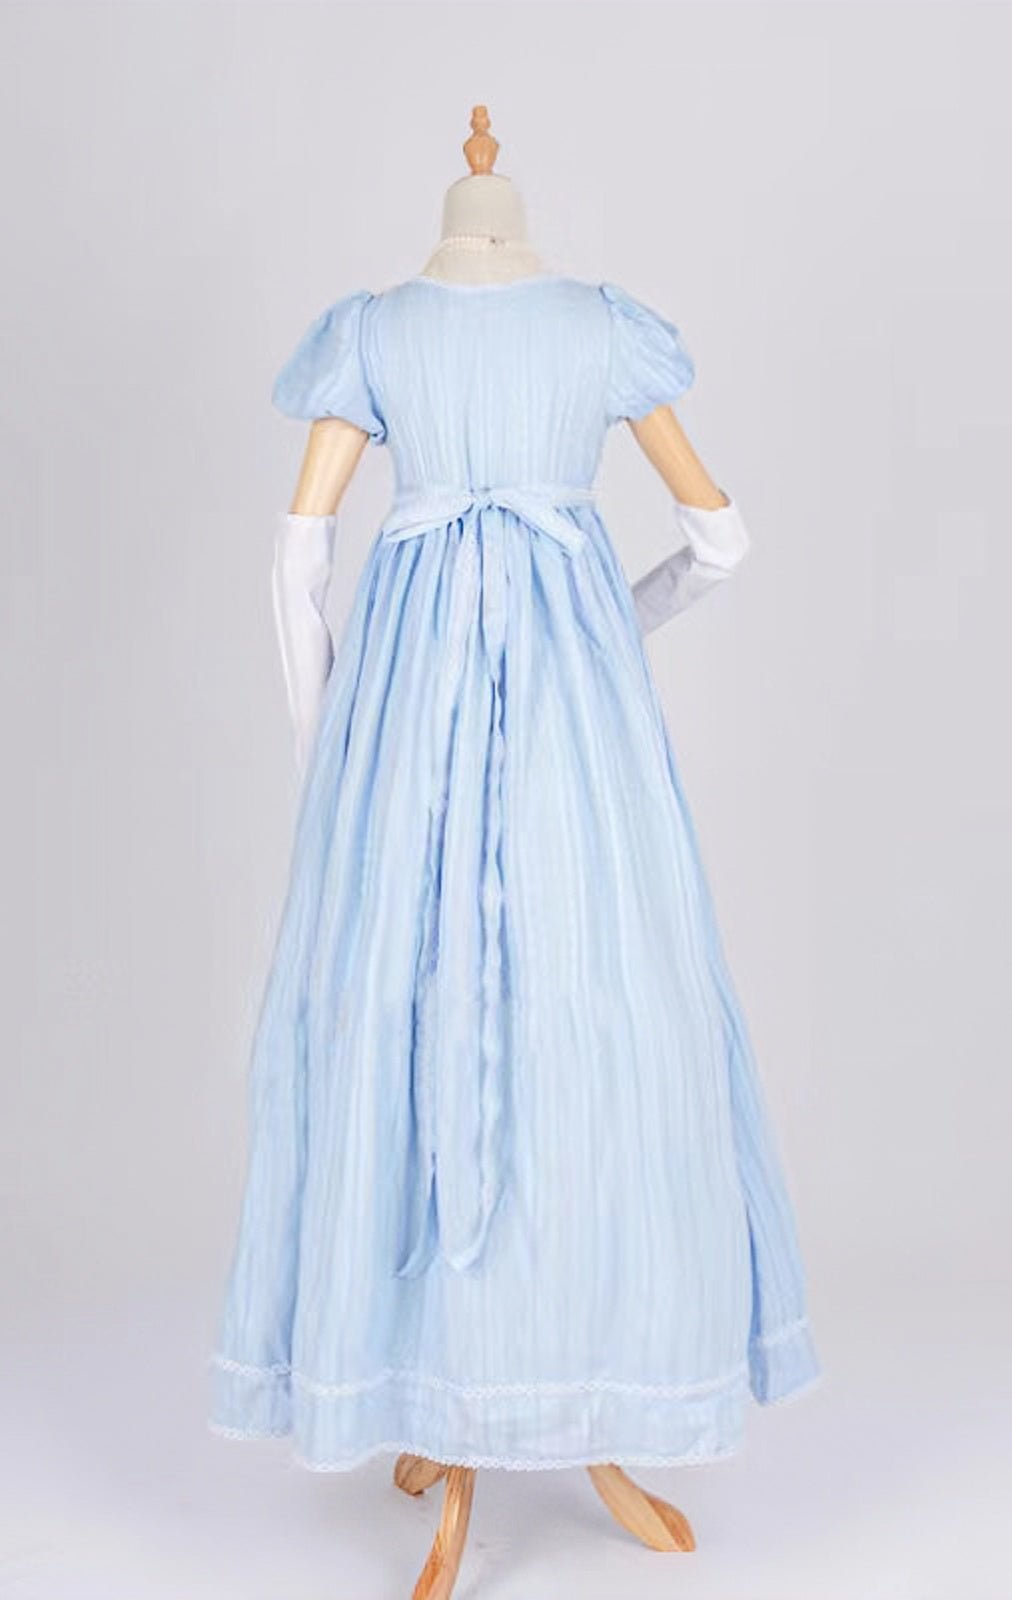 Bridgerton Inspired Regency Era Blue Cotton Dress With Brooch- Regency Ball Gown - Plus Size - WonderlandByLilian